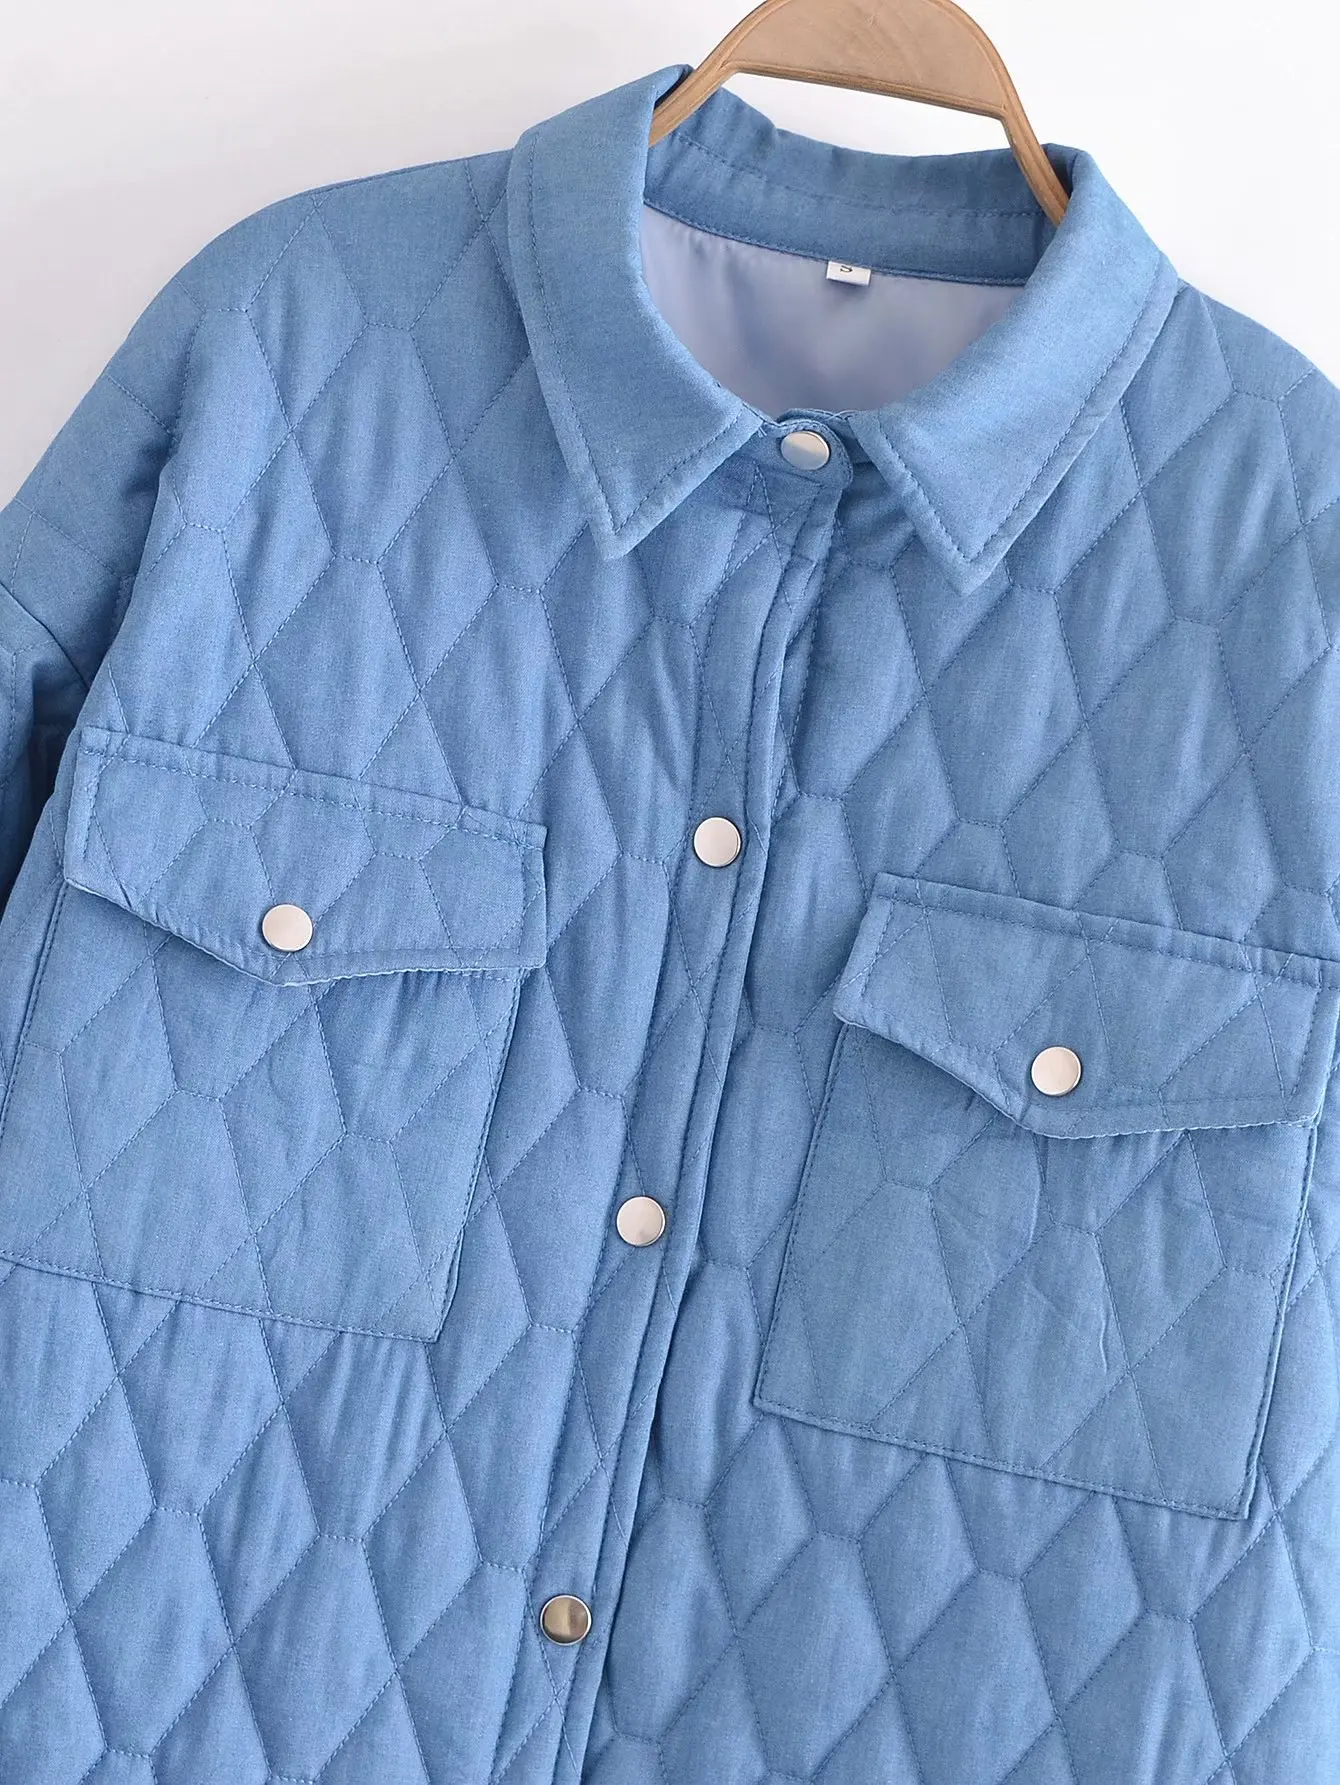 Свободная Женская джинсовая рубашка PUWD Стильная хлопковая куртка осень/зима 2021